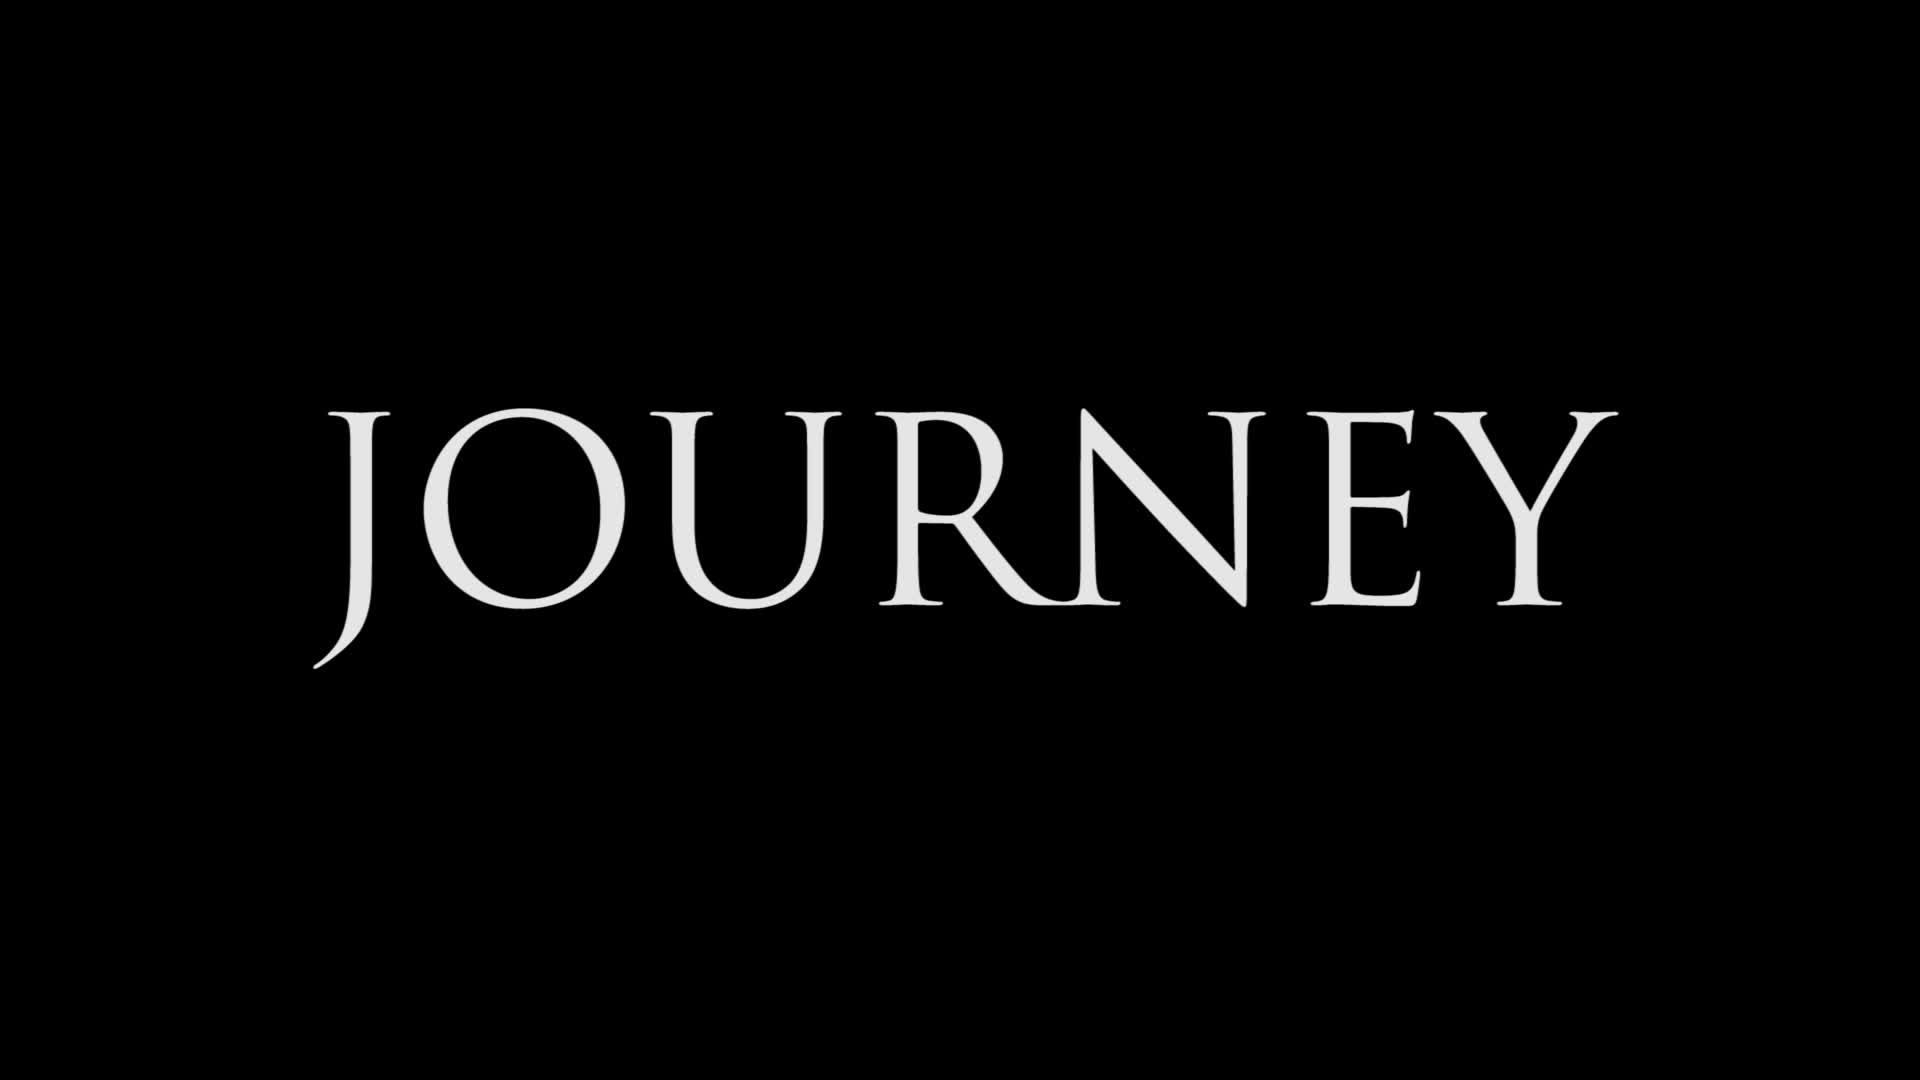 Journey 